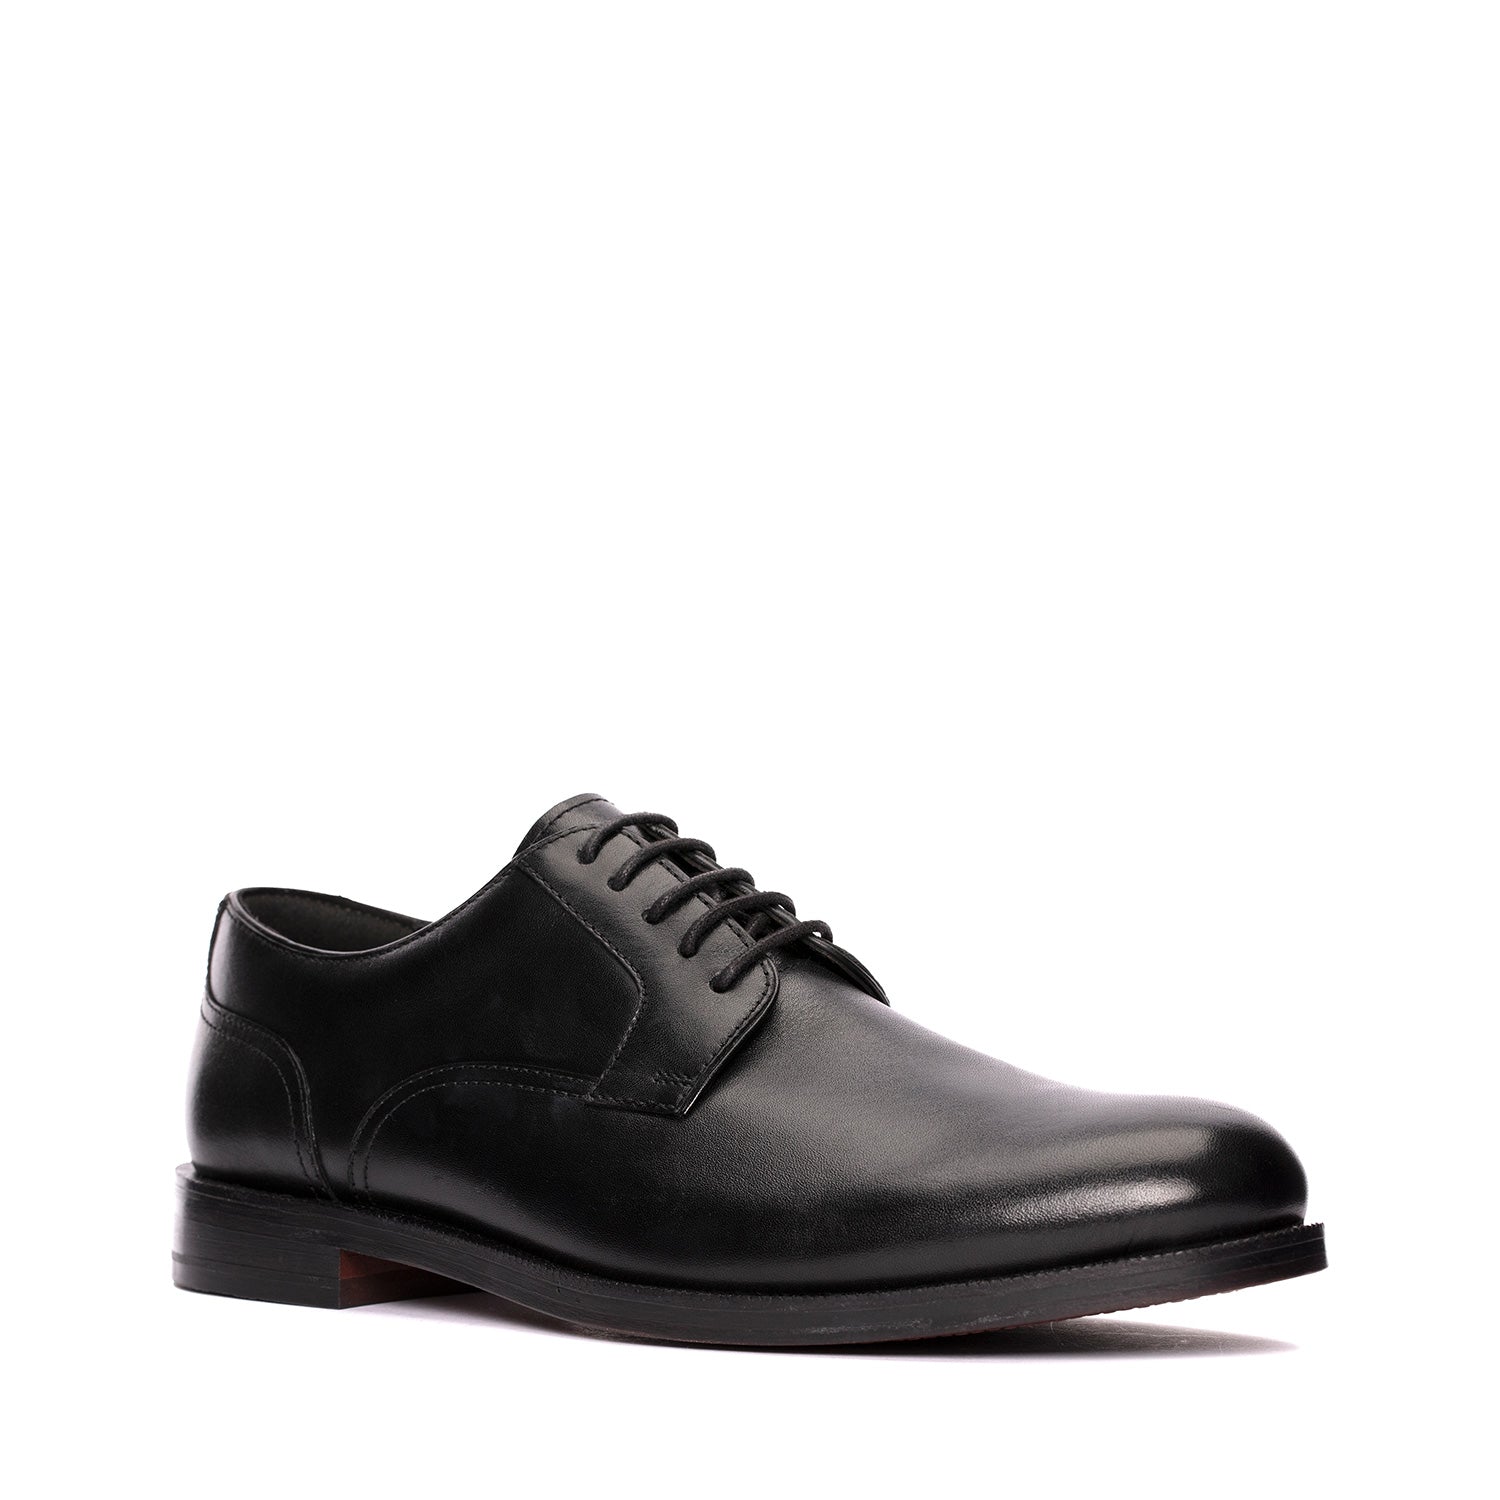 Shop Craftdean Lace - Men's Black Shoes | Clarks